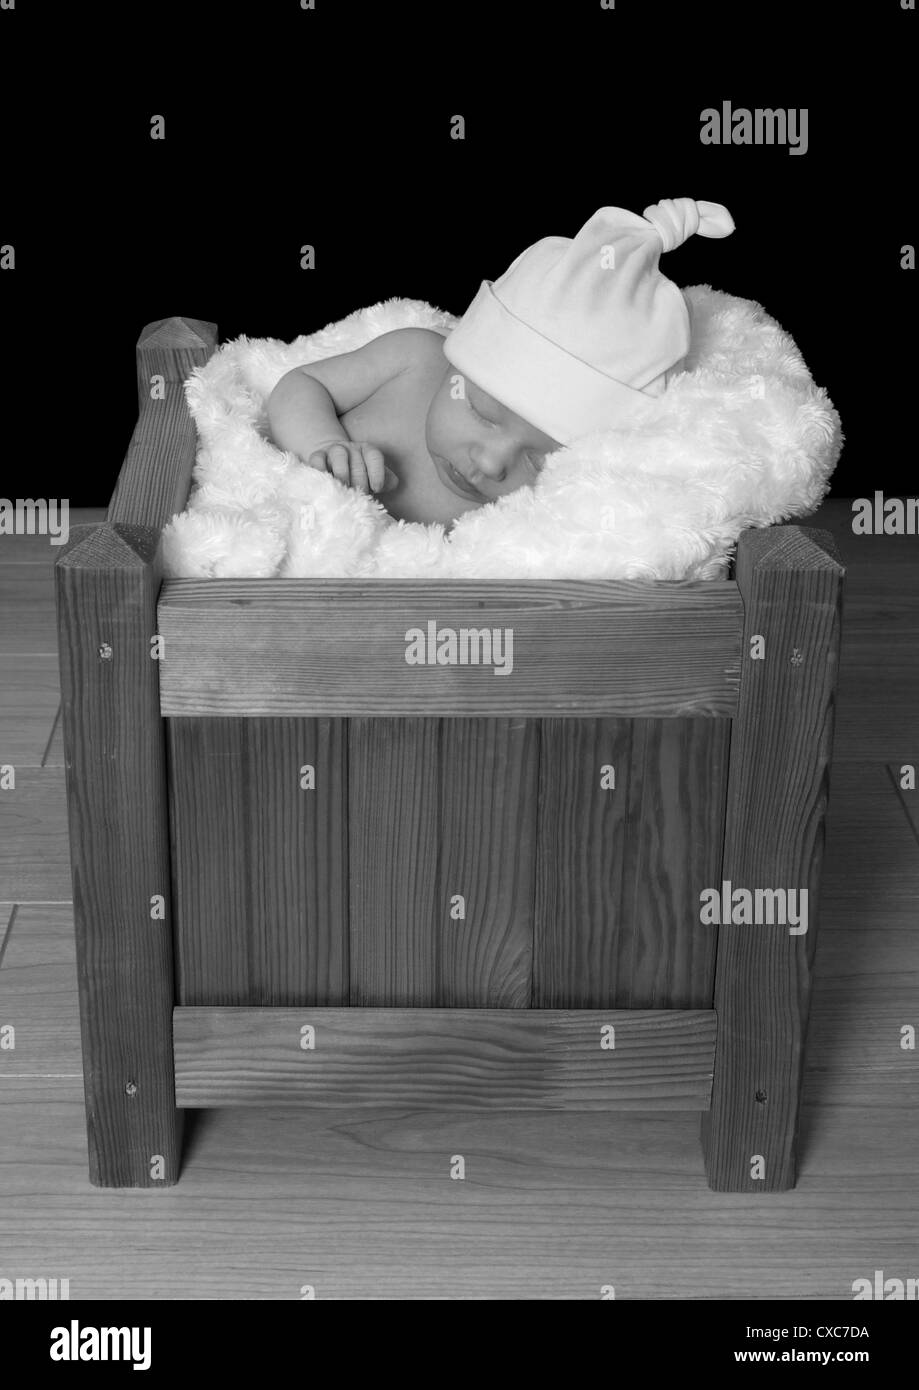 Junge baby Mädchen trägt einen Hut, schläft in einem hölzernen Kasten Stockfoto